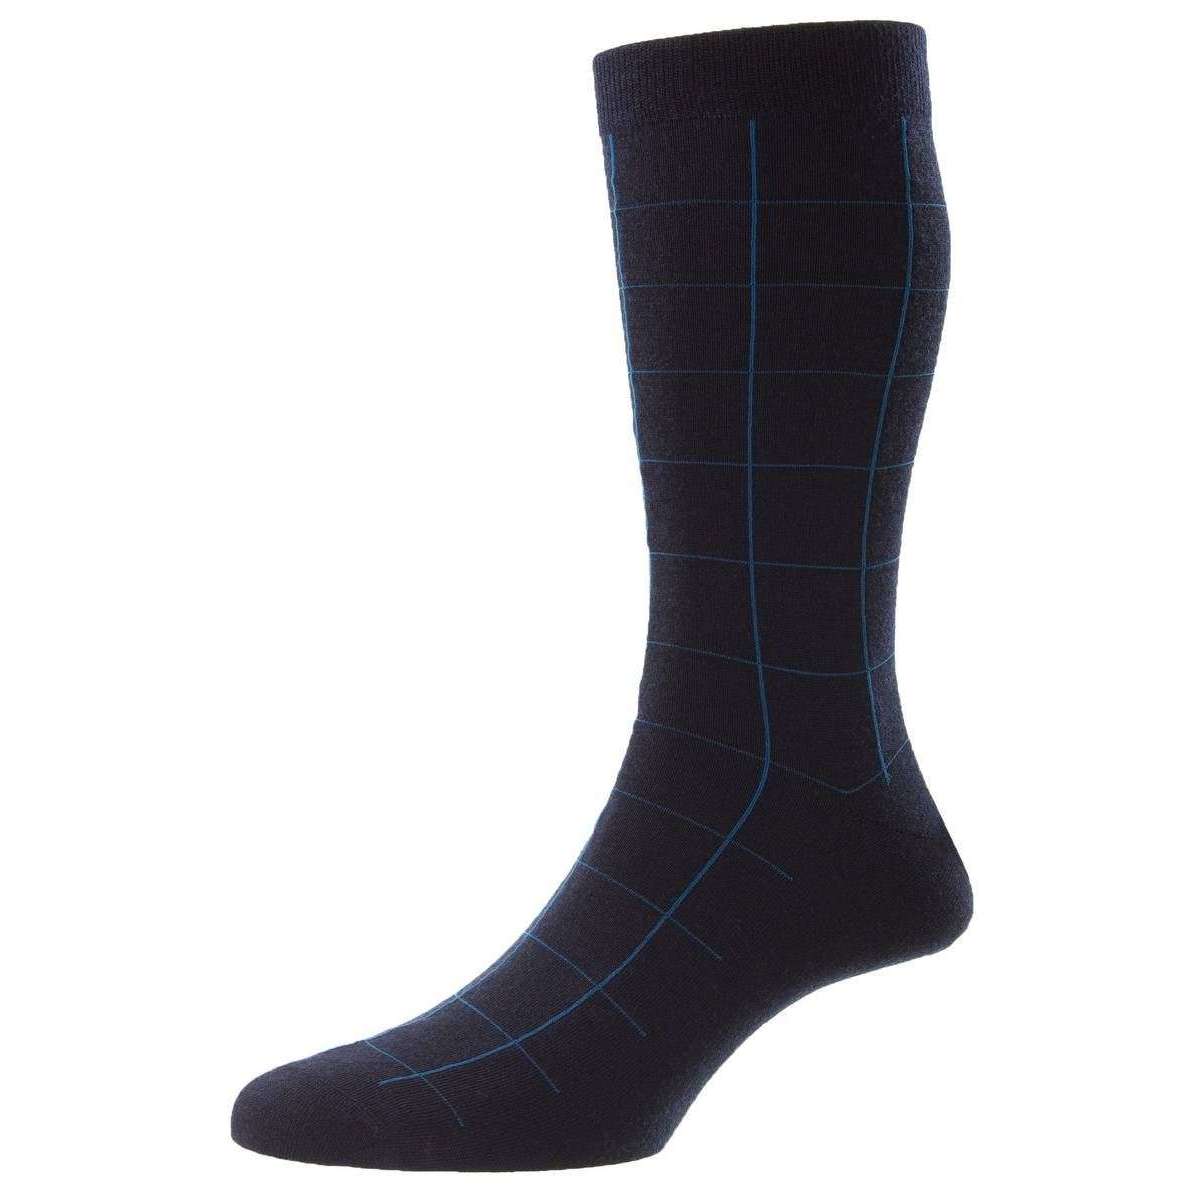 Pantherella Westleigh Merino Wool Socks - Navy